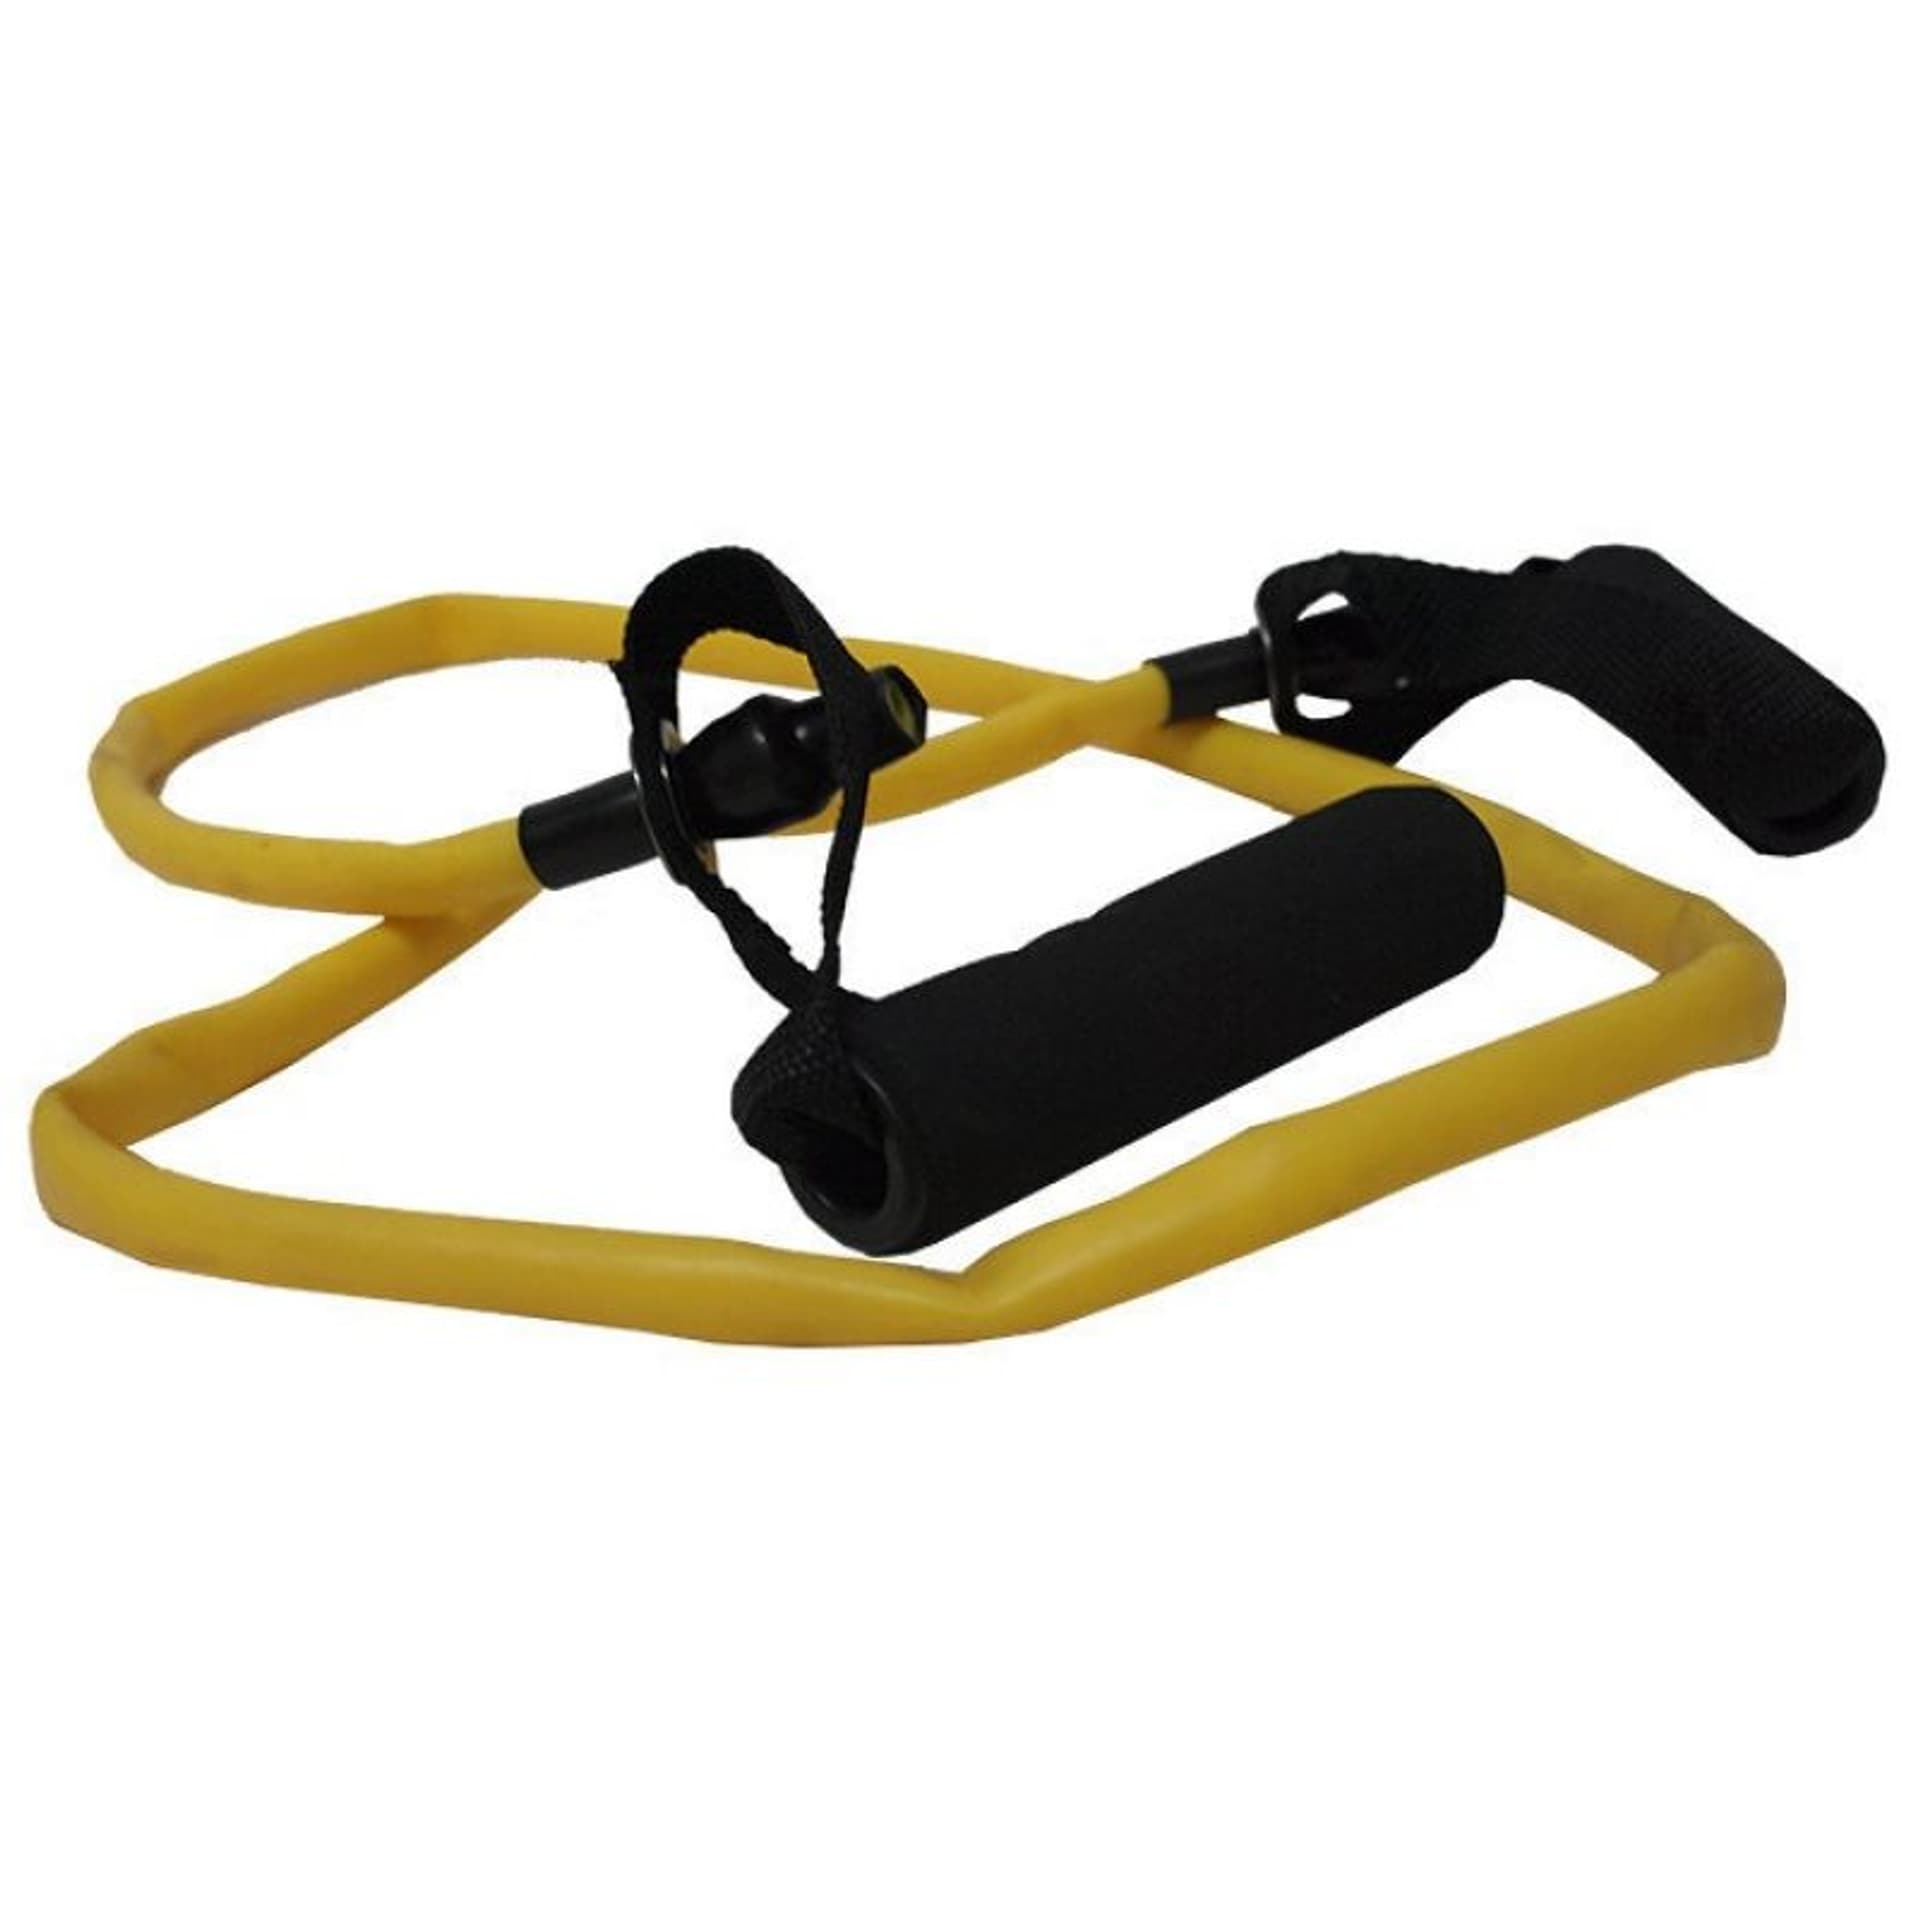 

Guma do fitnessu z rączkami SMJ GB-S2109 Heavy żółta (kolor Żółty, rozmiar N/A)